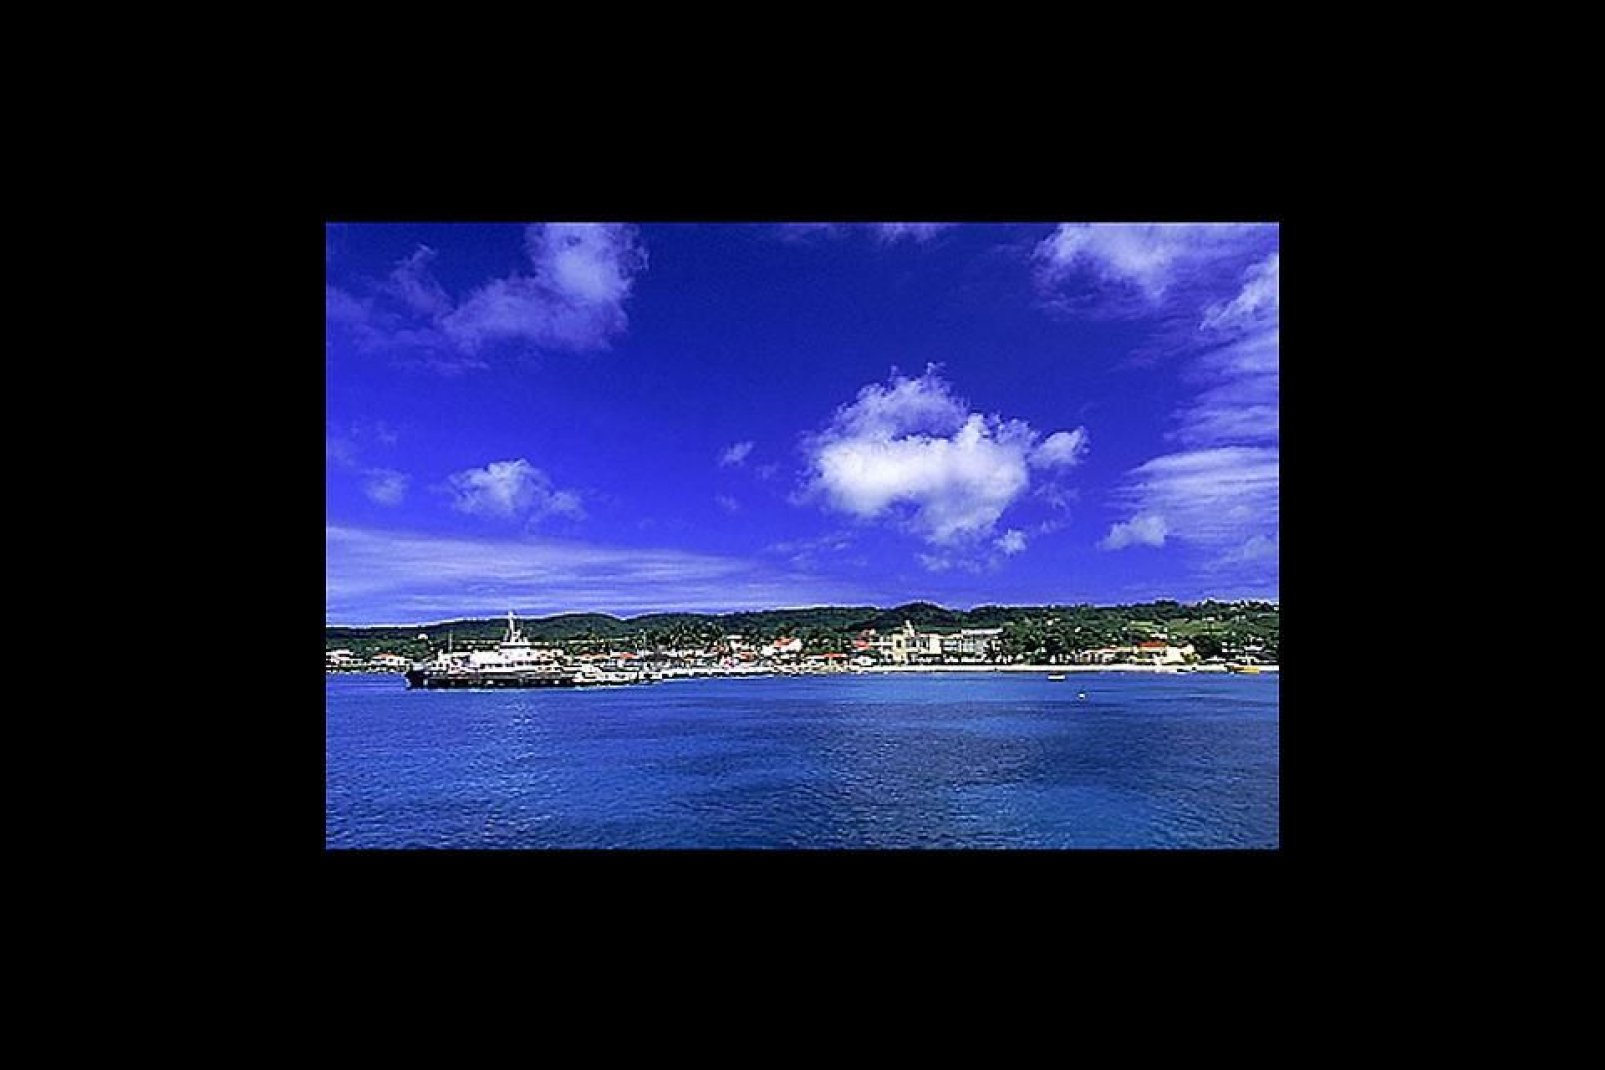 Grand-Bourg liegt im Südwesten der Insel und gehört zum Departement Guadeloupe. Hier befindet sich der größte Hafen der Insel.